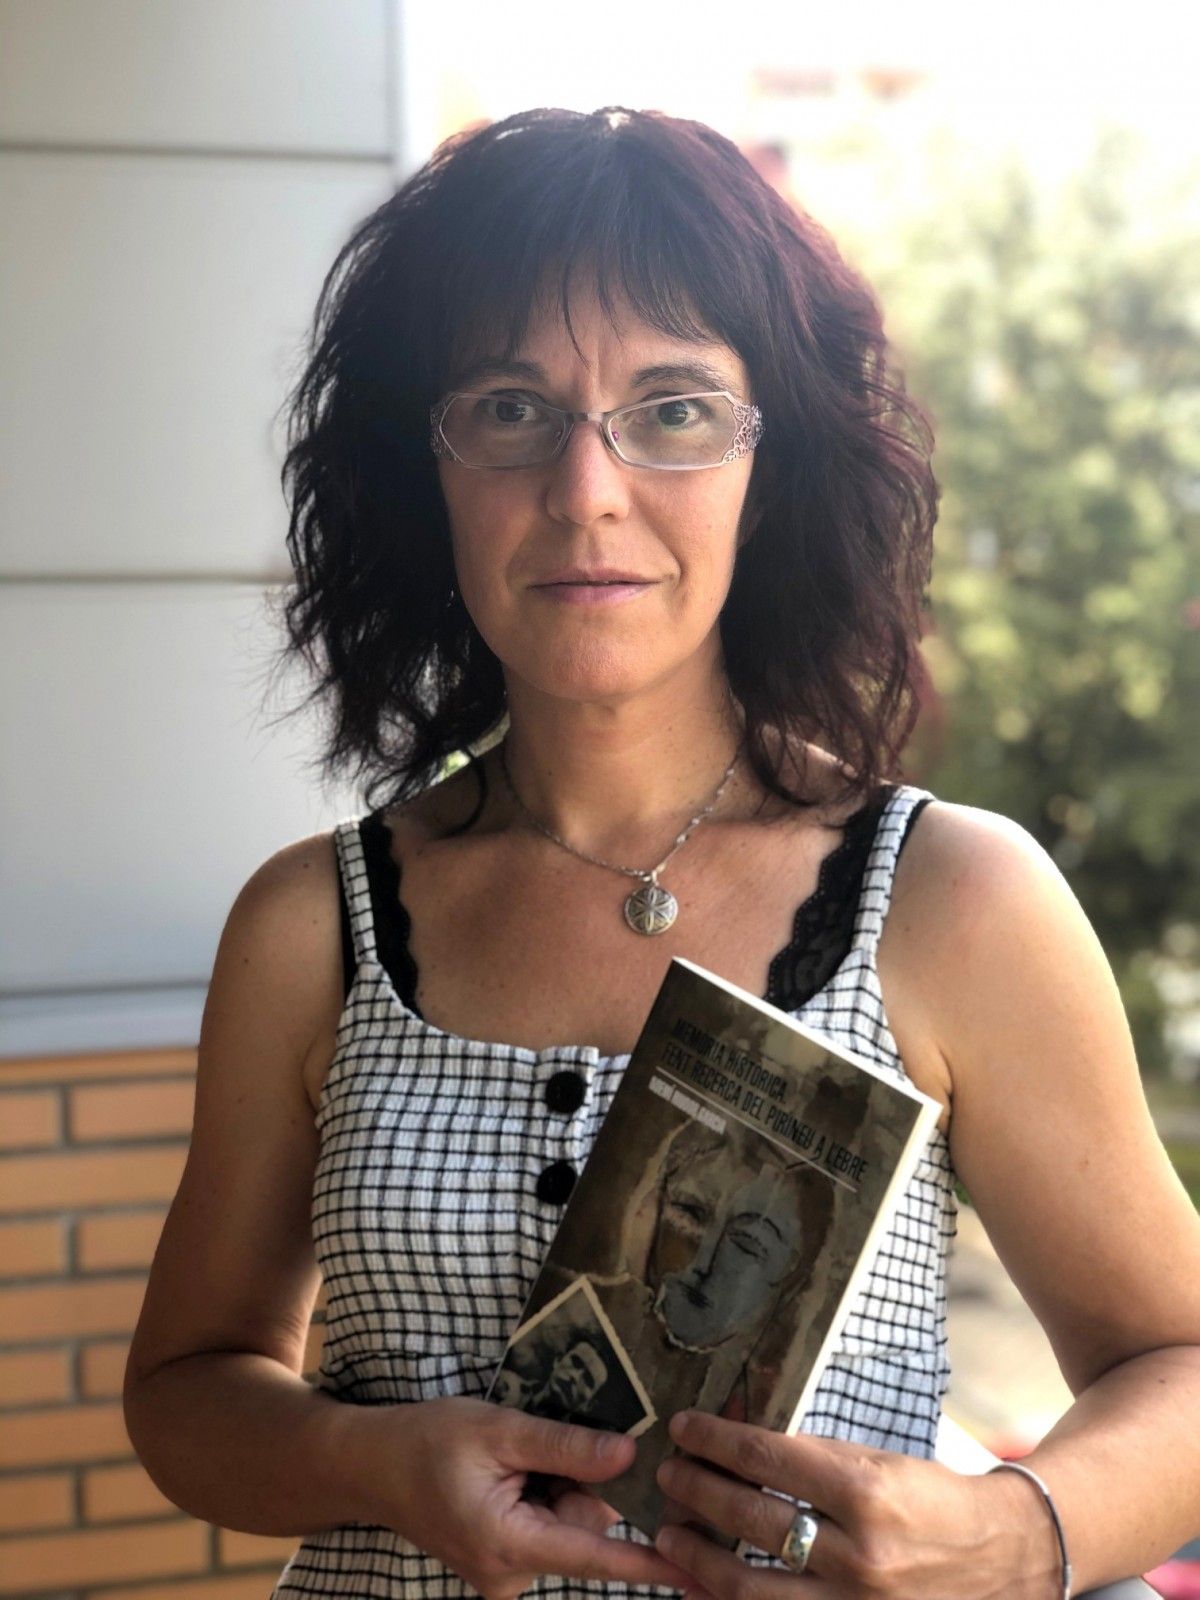 La historiadora Noemí Riudor amb el llibre 'Memòria històrica. Fent recerca del Pirineu a l'Ebre' a les mans.